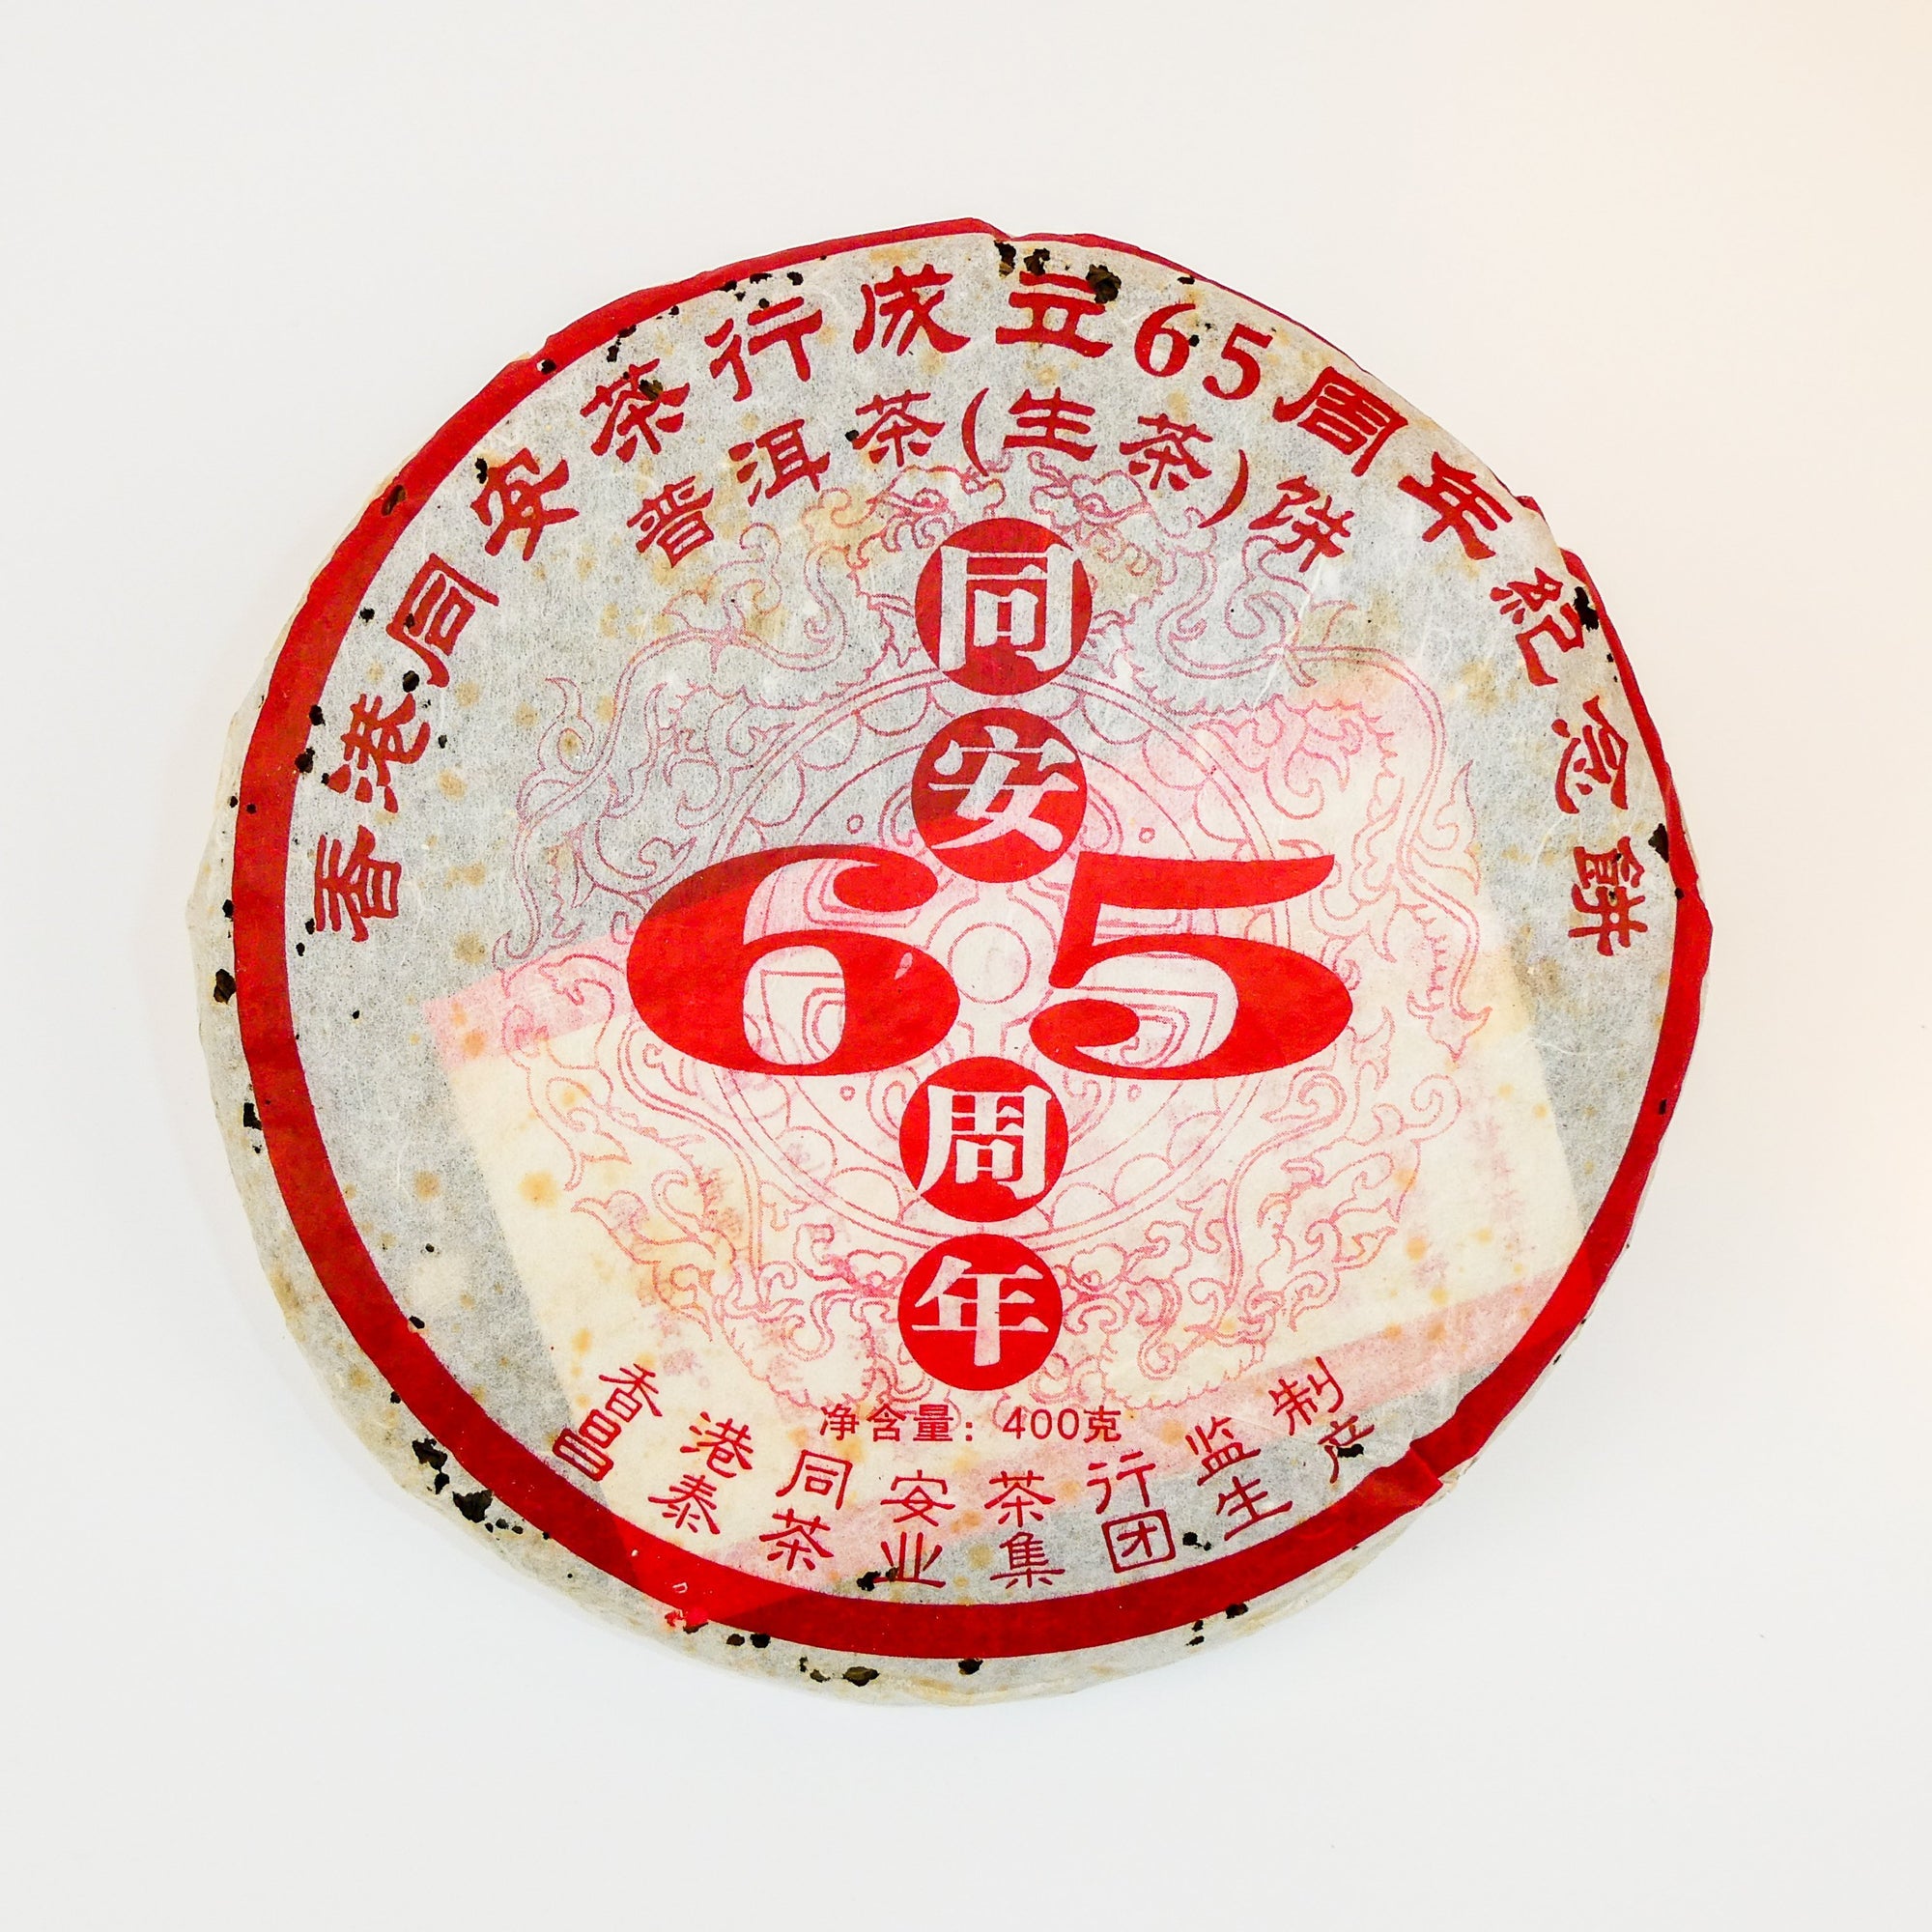 2006 changtai si pu yuan tong raw puerh